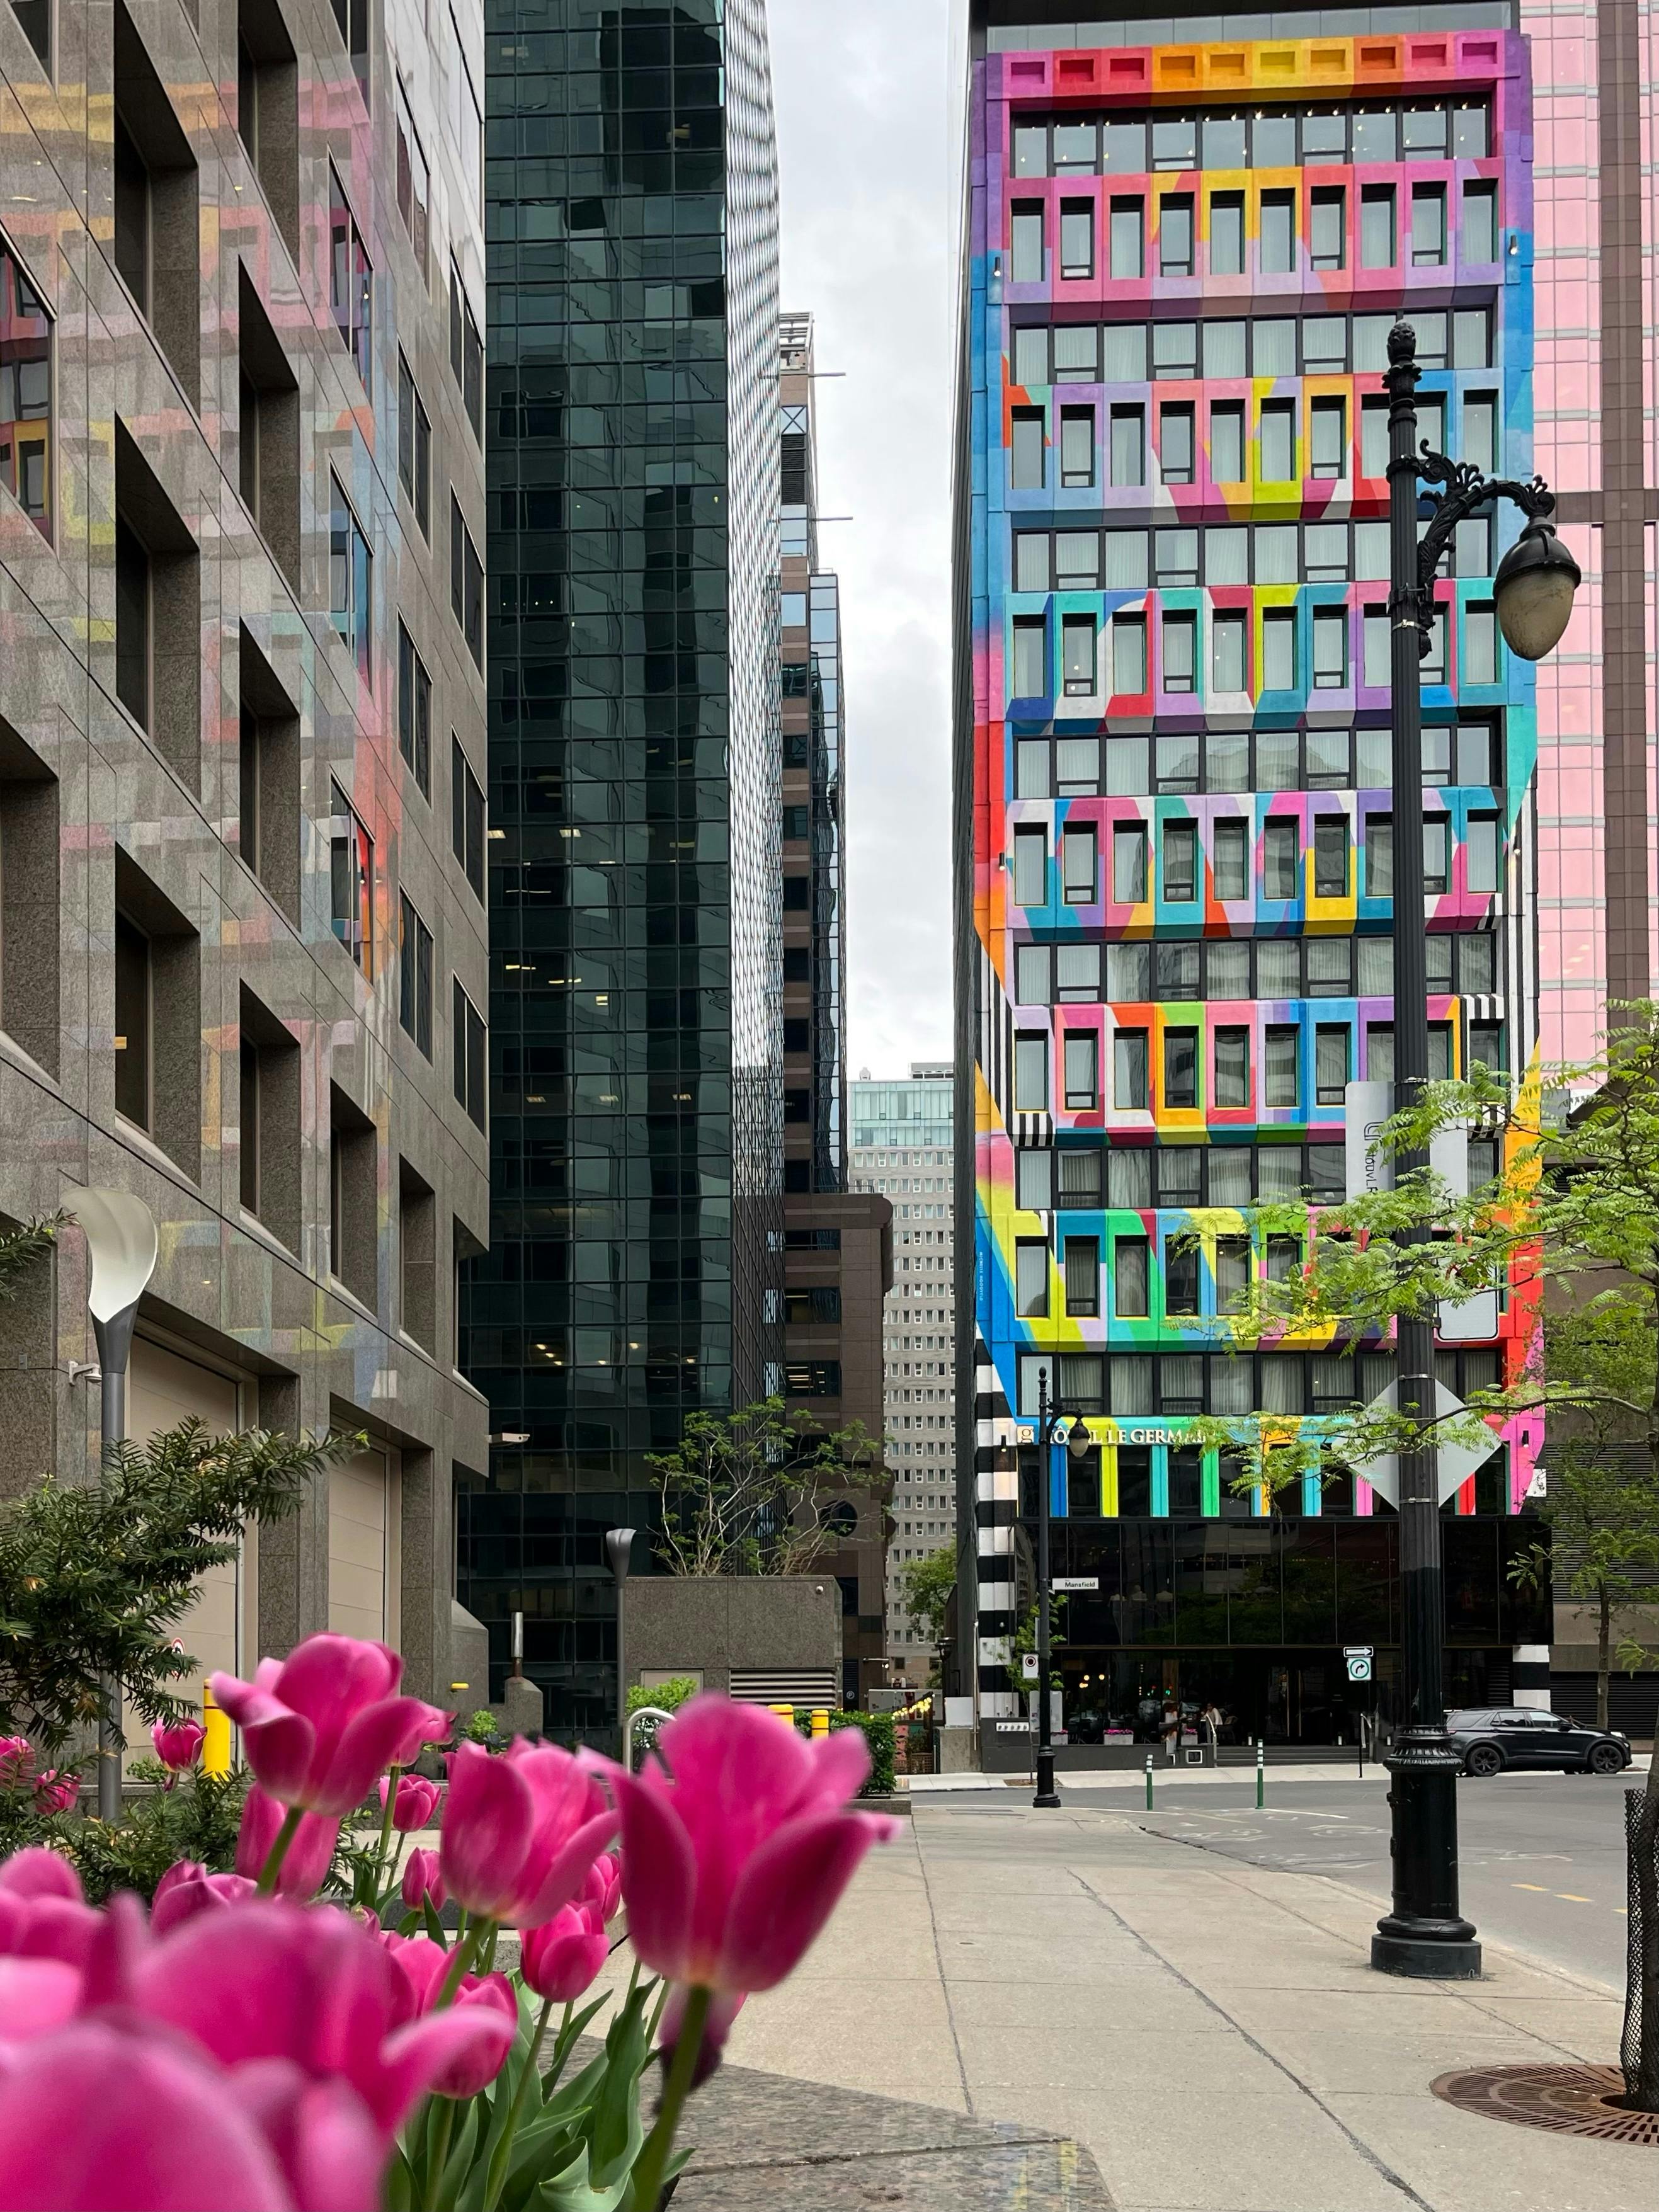 L'hotel Germain de Montréal avec une facade colorée, une initiative du festival Mural 2021